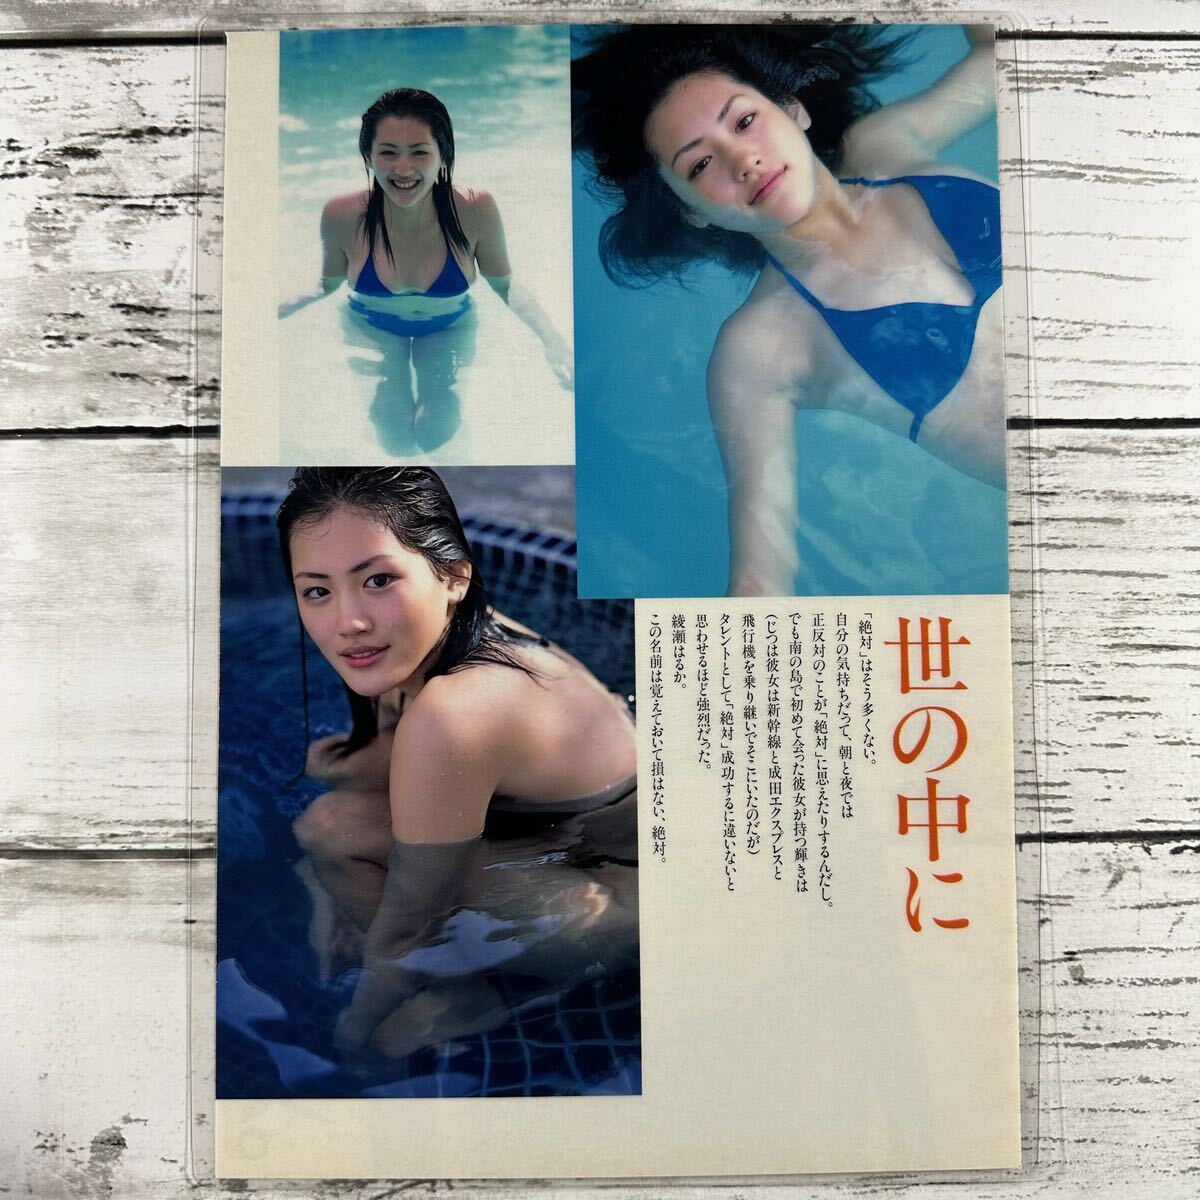 [ высокое качество ламинирование отделка ][ Ayase Haruka ] Play Boy 2001 год 13 номер журнал вырезки 4P B5 плёнка купальный костюм bikini model актер женщина super 